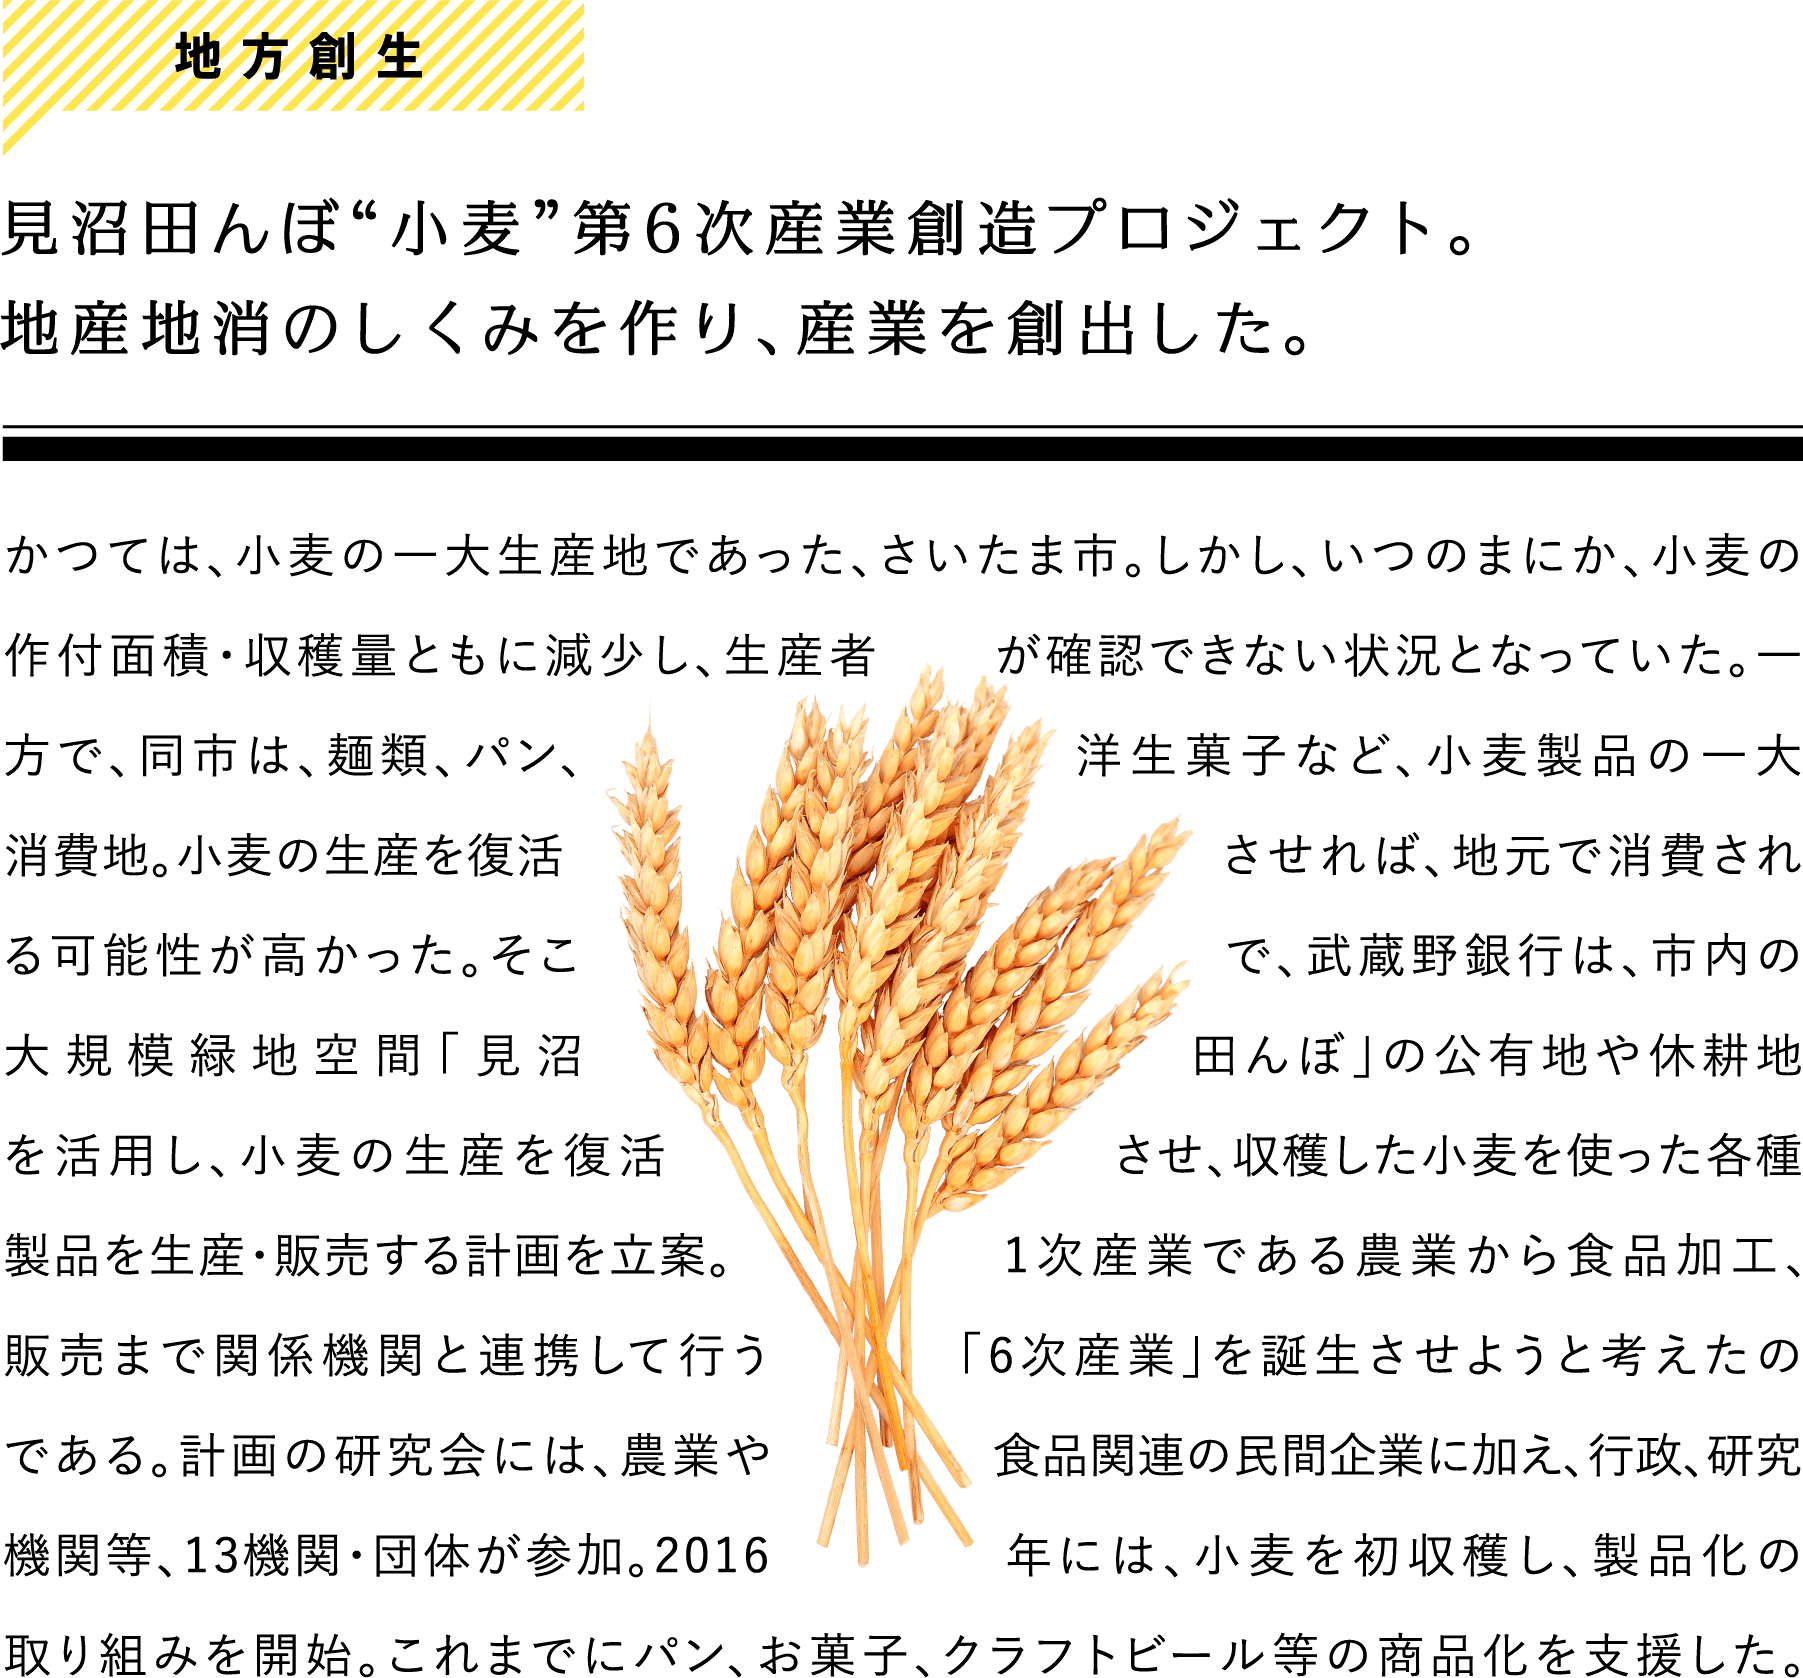 地方創生 見沼田んぼ“小麦”第6次産業創造プロジェクト。地産地消のしくみを作り、産業を創出した。